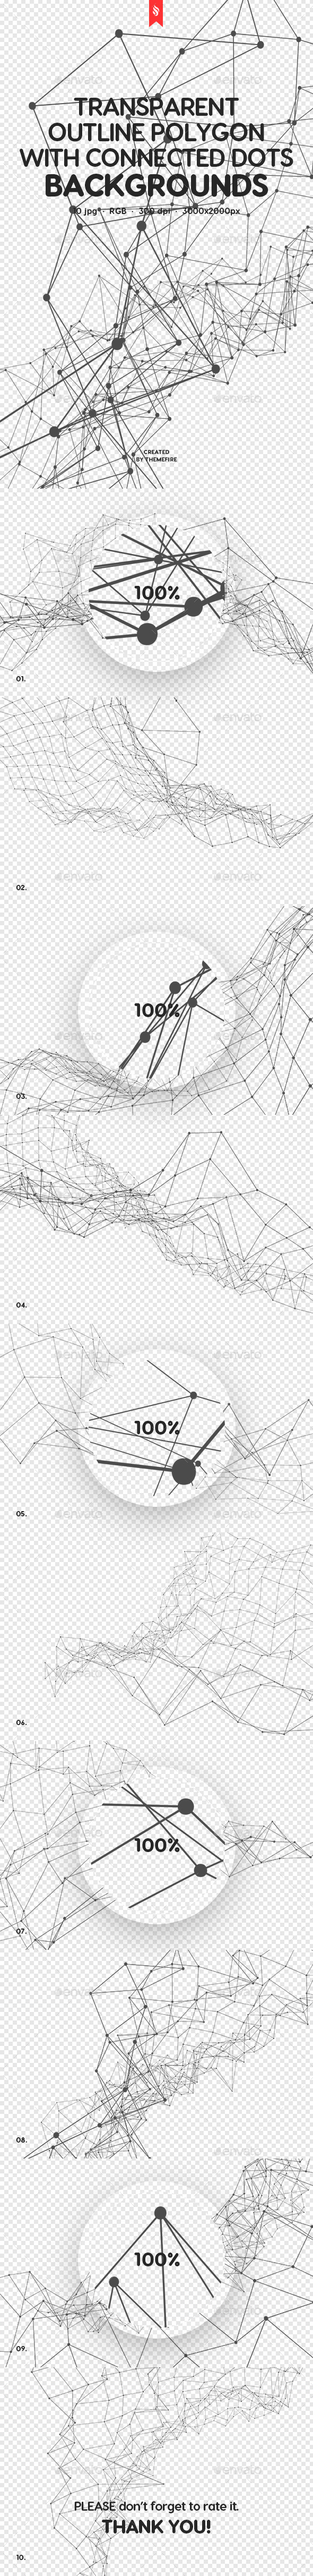 带连接点多边形轮廓透明背景Transparent Outline Polygon with Connected Dots Backgrounds插图